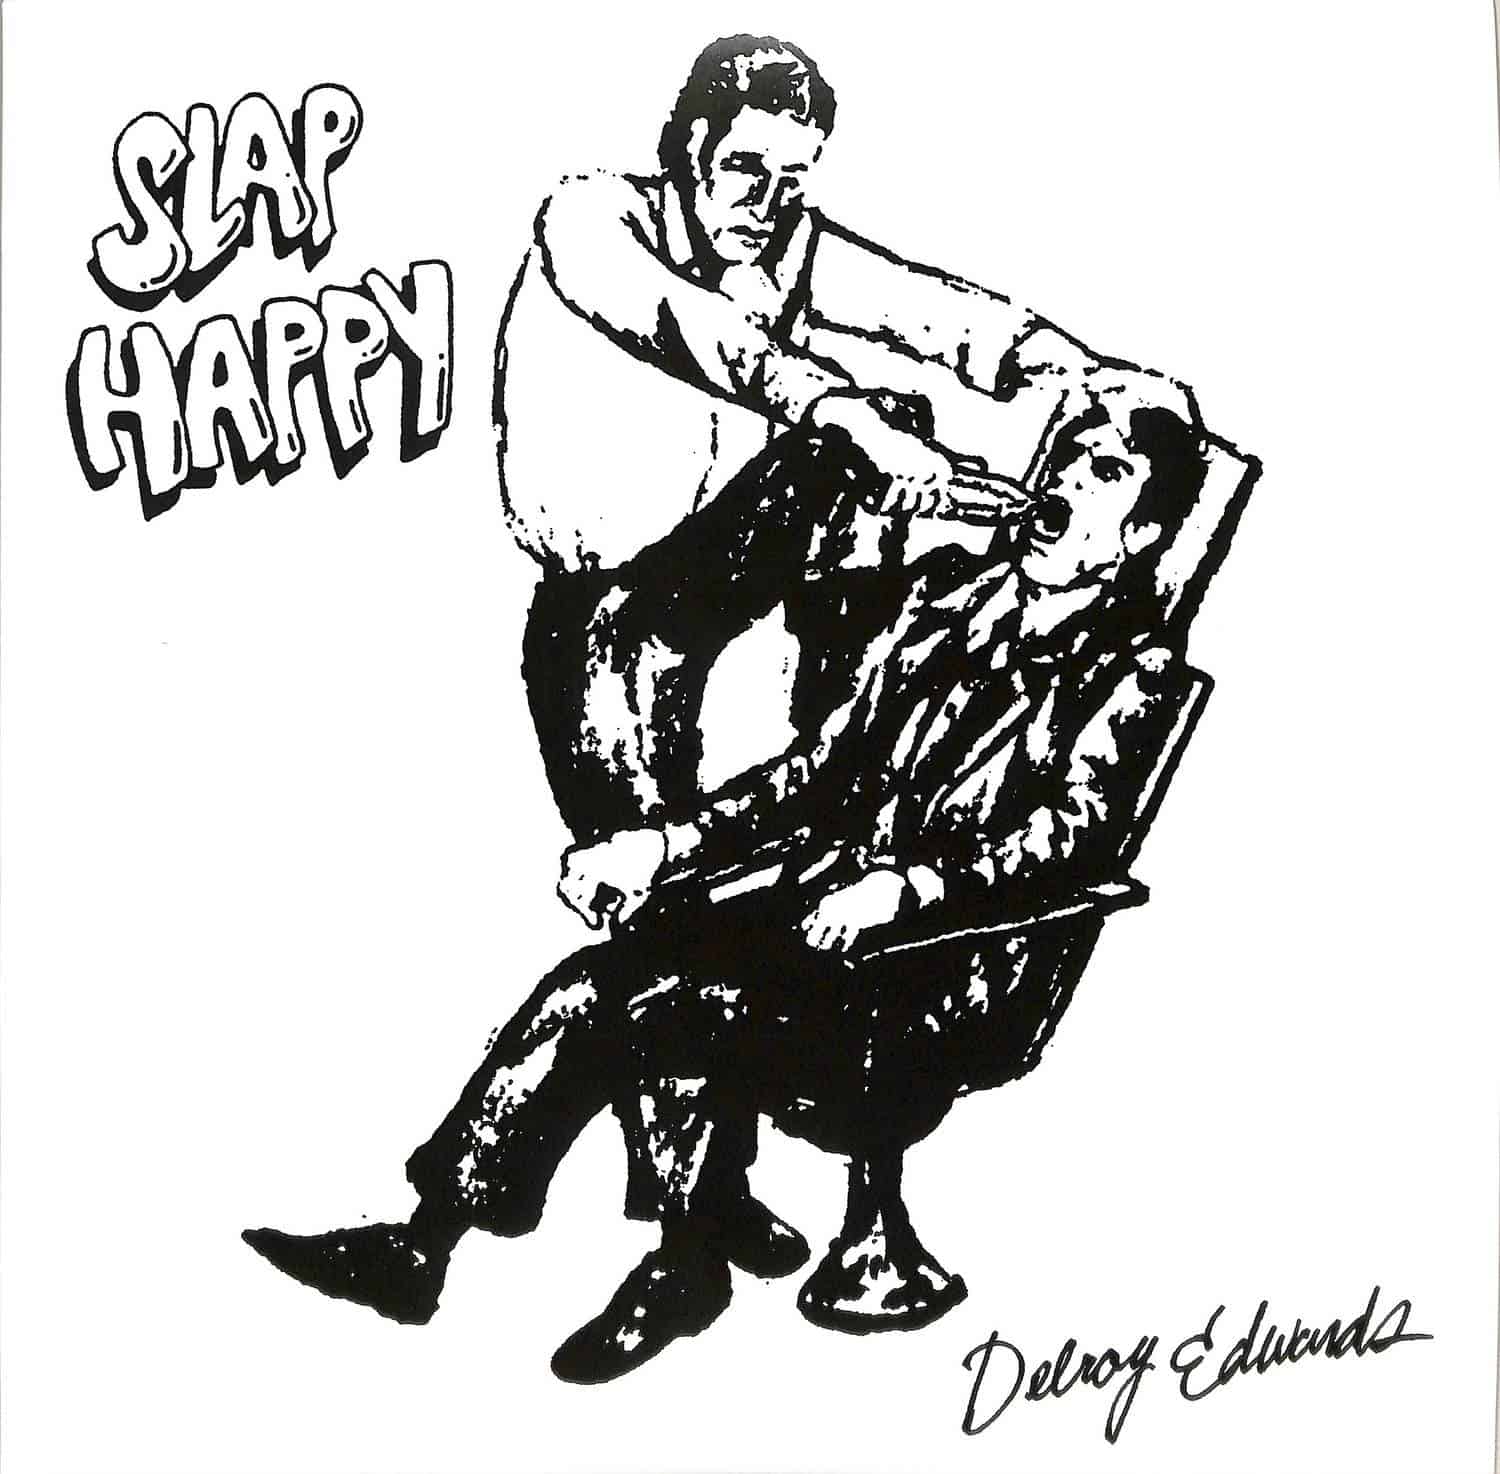 Delroy Edwards - SLAP HAPPY 